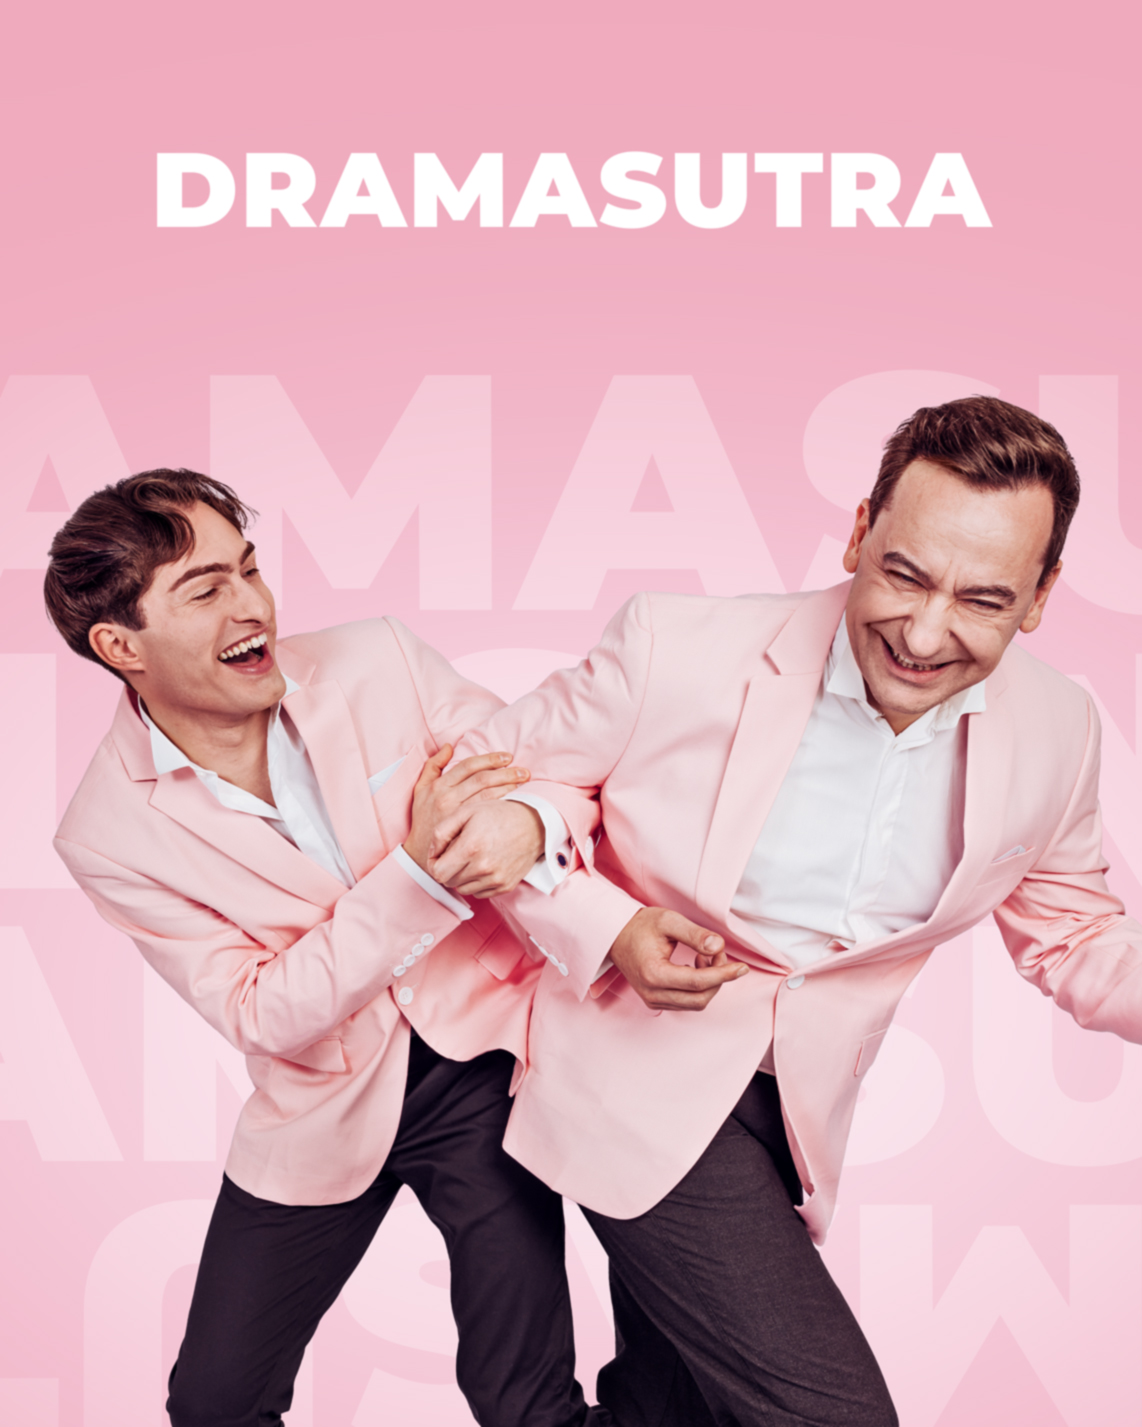 Dramasutra – Der Podcast von Atimo und Mister Matthew.